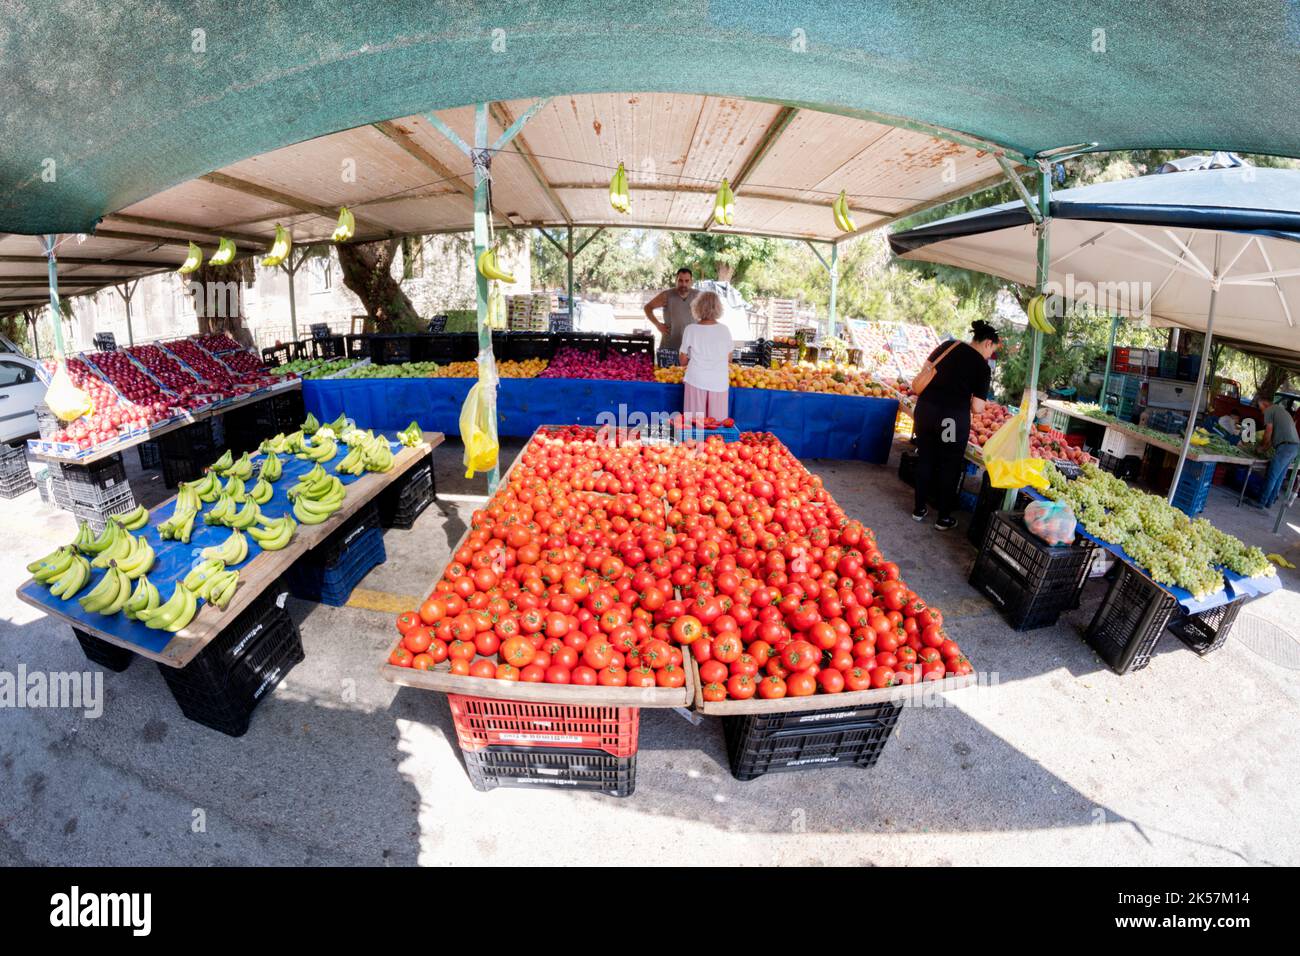 Frutas y verduras frescas, incluyendo una gran exhibición de tomates para la venta en un puesto de mercado en un mercado al aire libre. Los clientes están seleccionando productos. Foto de stock